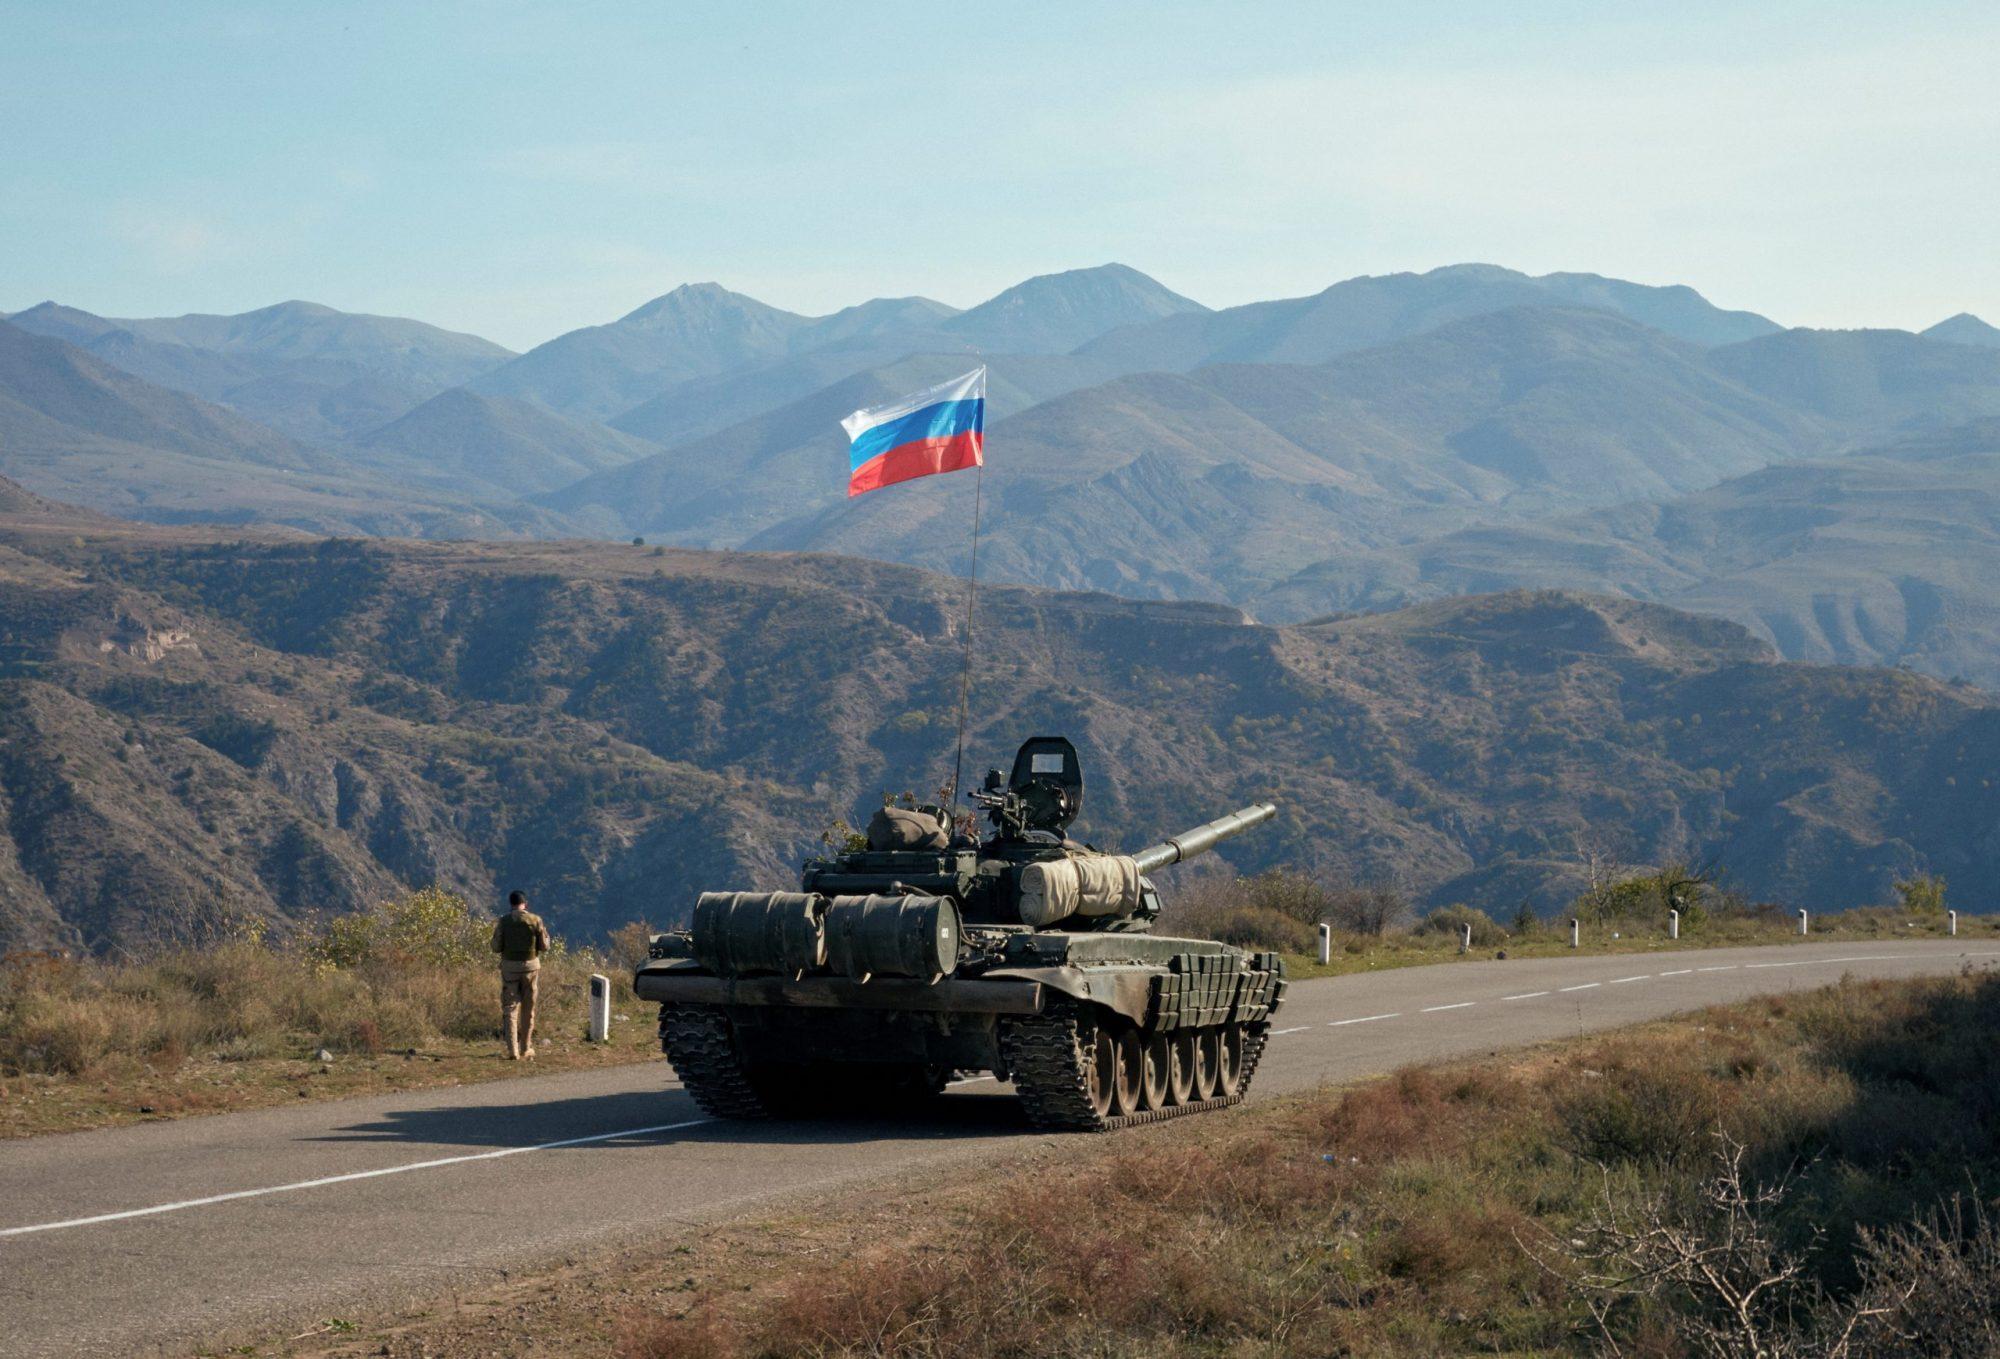 Ռուսաստանը չի լքել Հայաստանին, այլ նետել է բոլոր ուժերը՝ ղարաբաղյան հարցը լուծելու համար․ ՌԴ ԱԳՆ